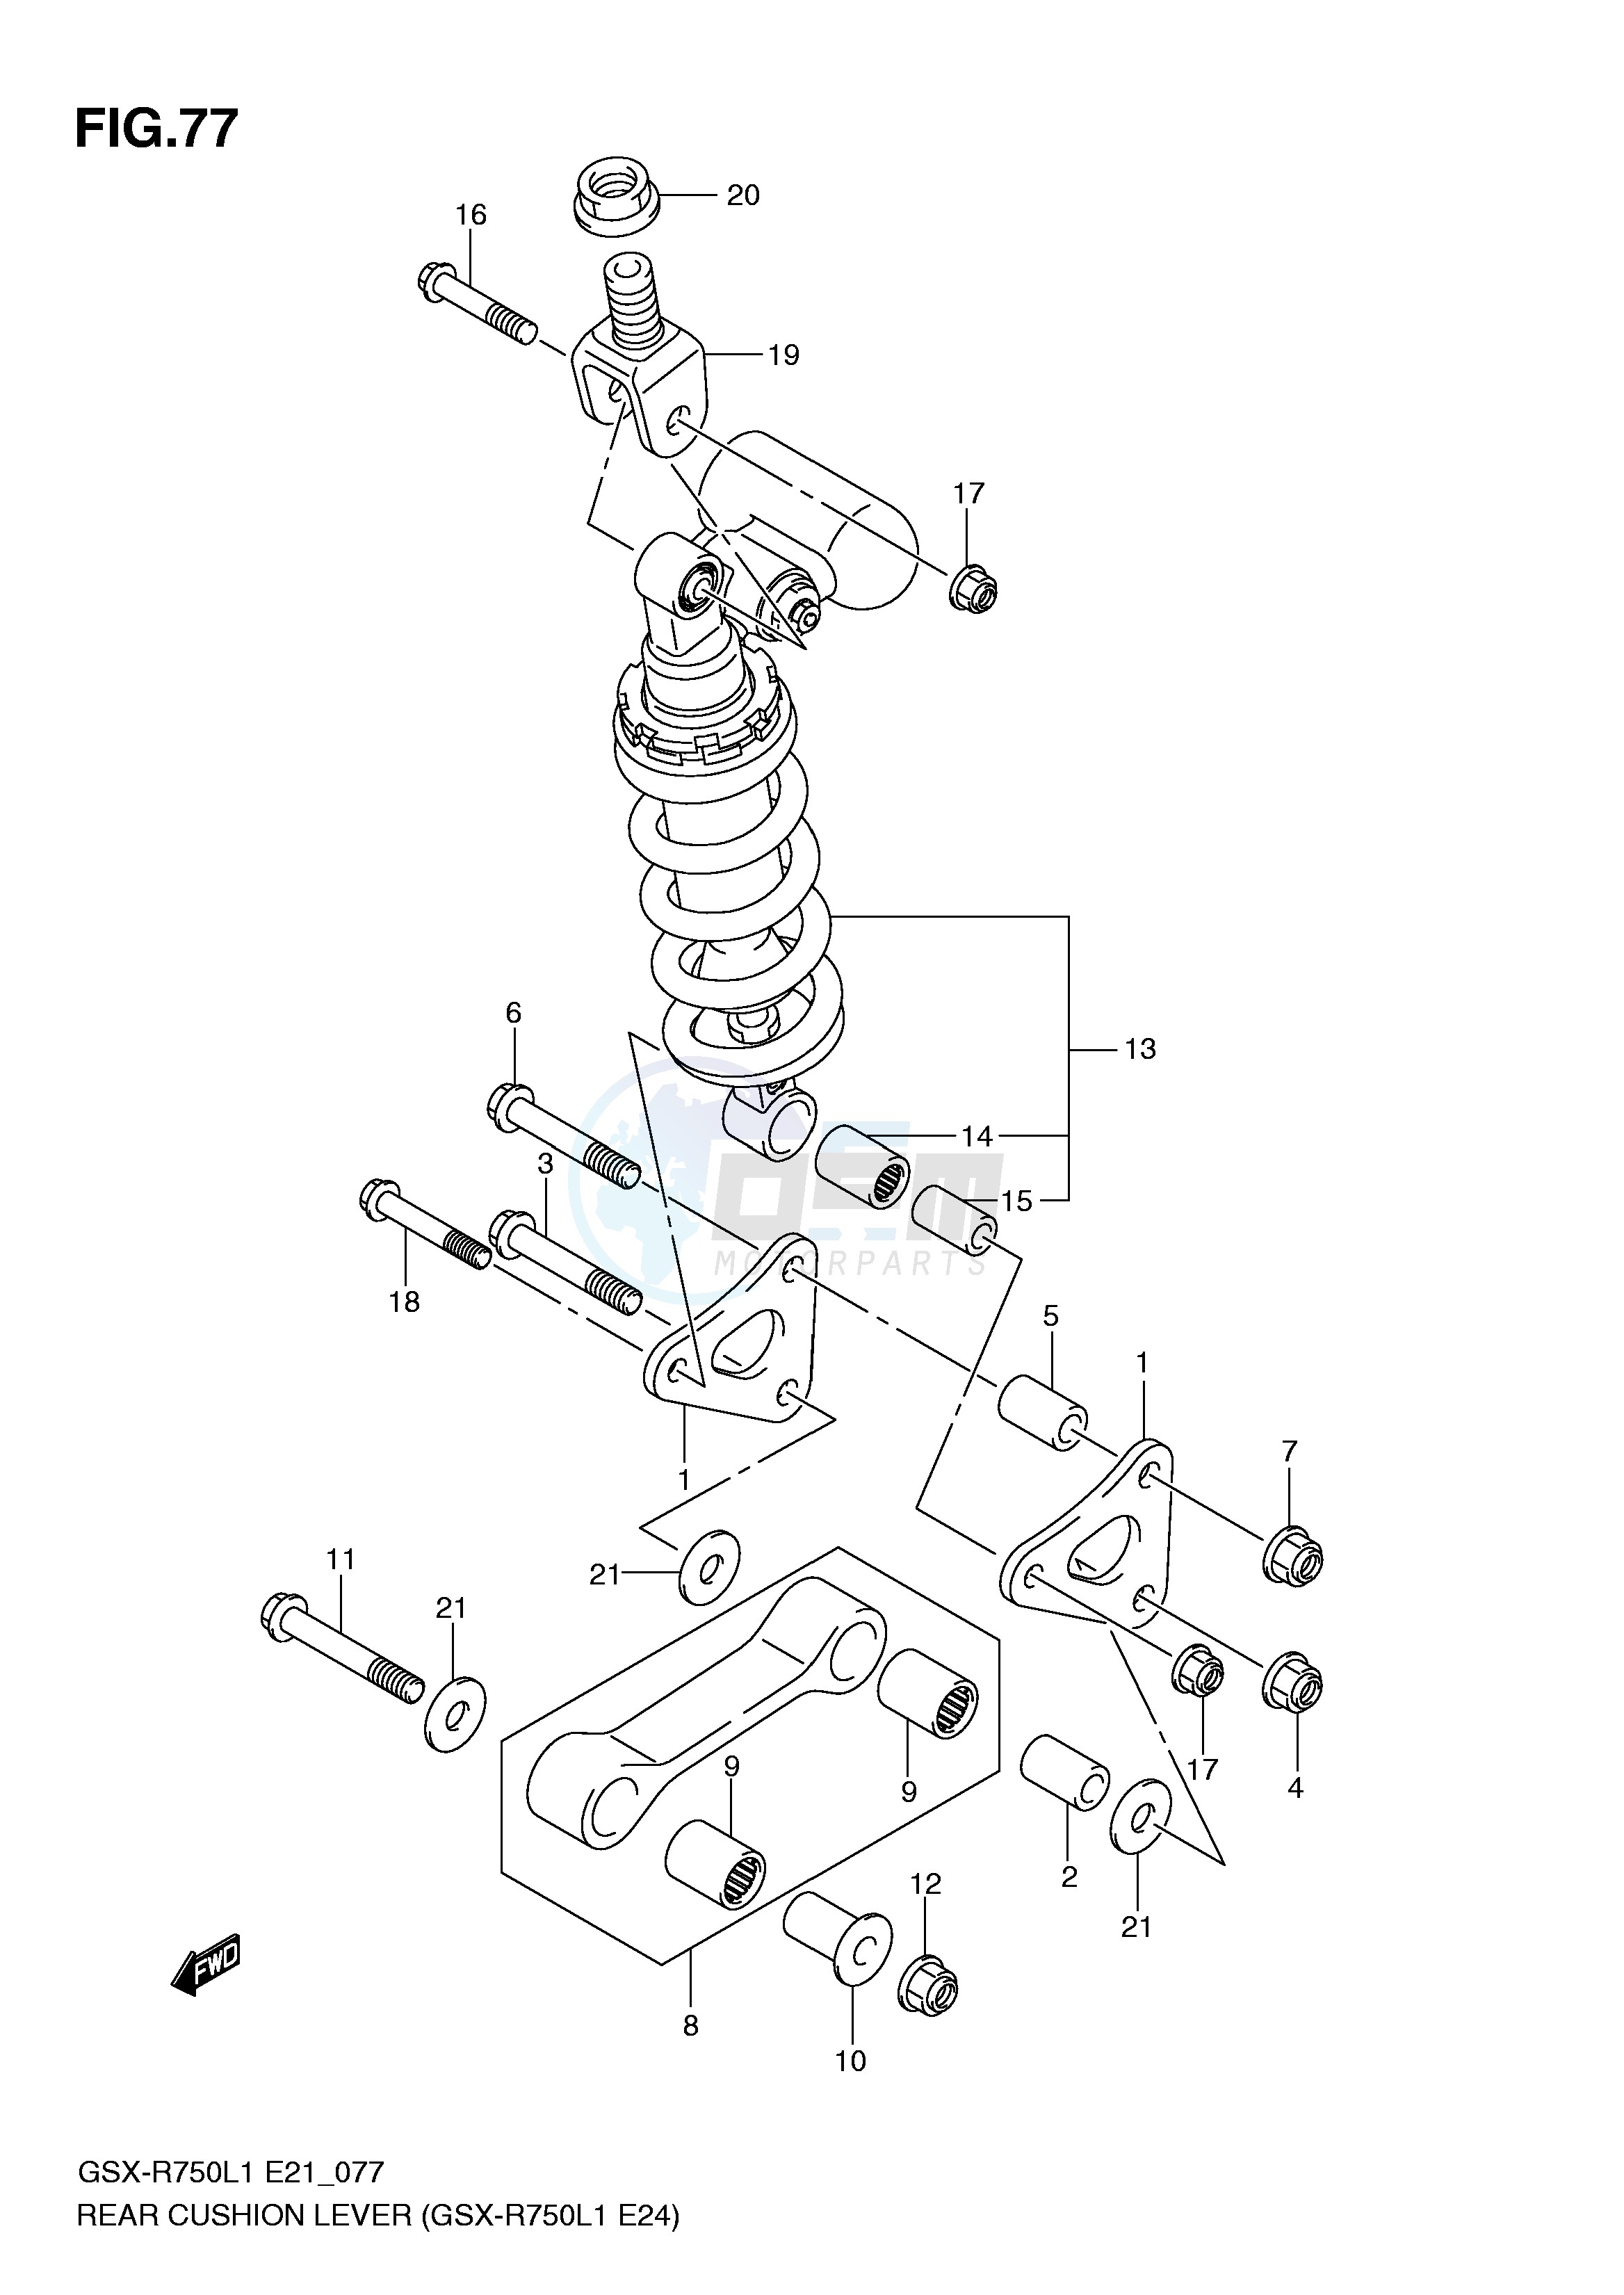 REAR CUSHION LEVER (GSX-R750L1 E24) blueprint